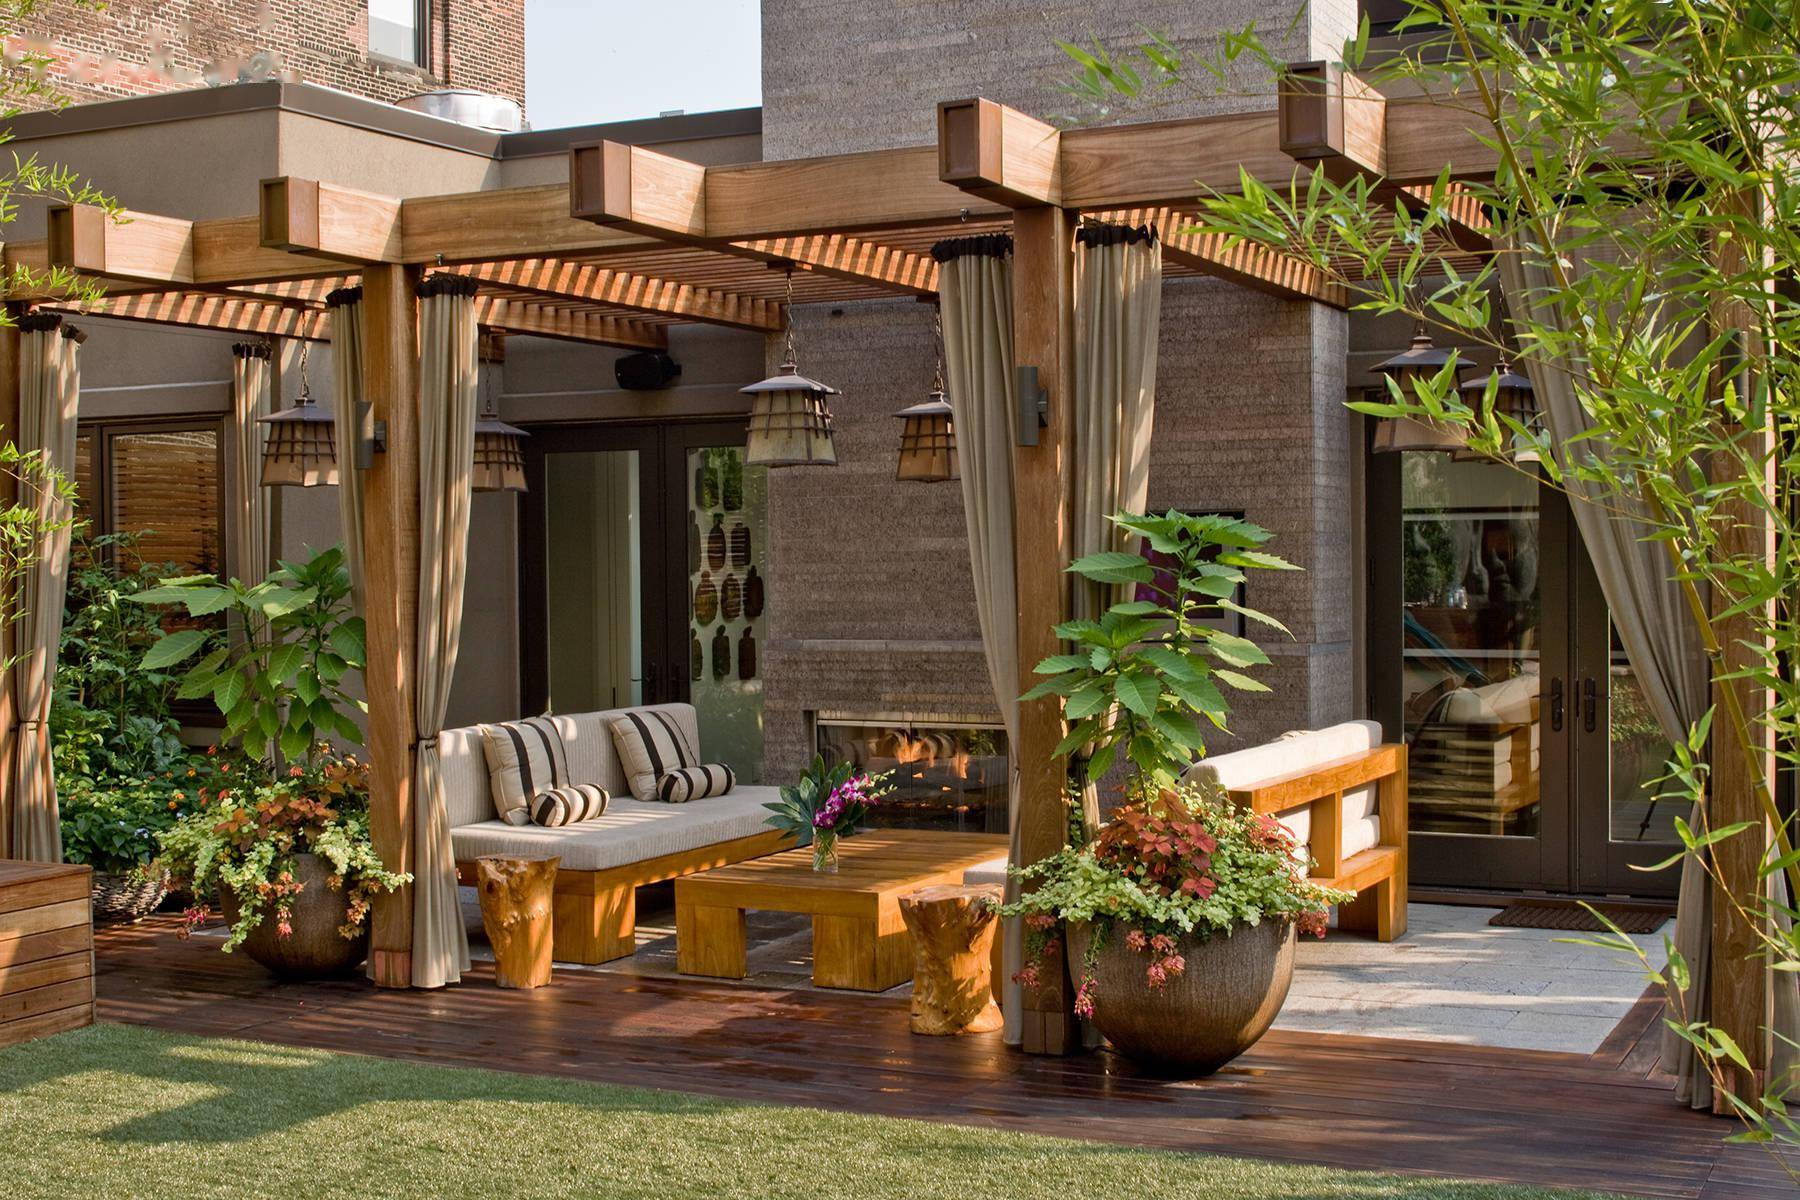 屋顶花园设计露台设计绿化景观设计合集图片参考资料79套